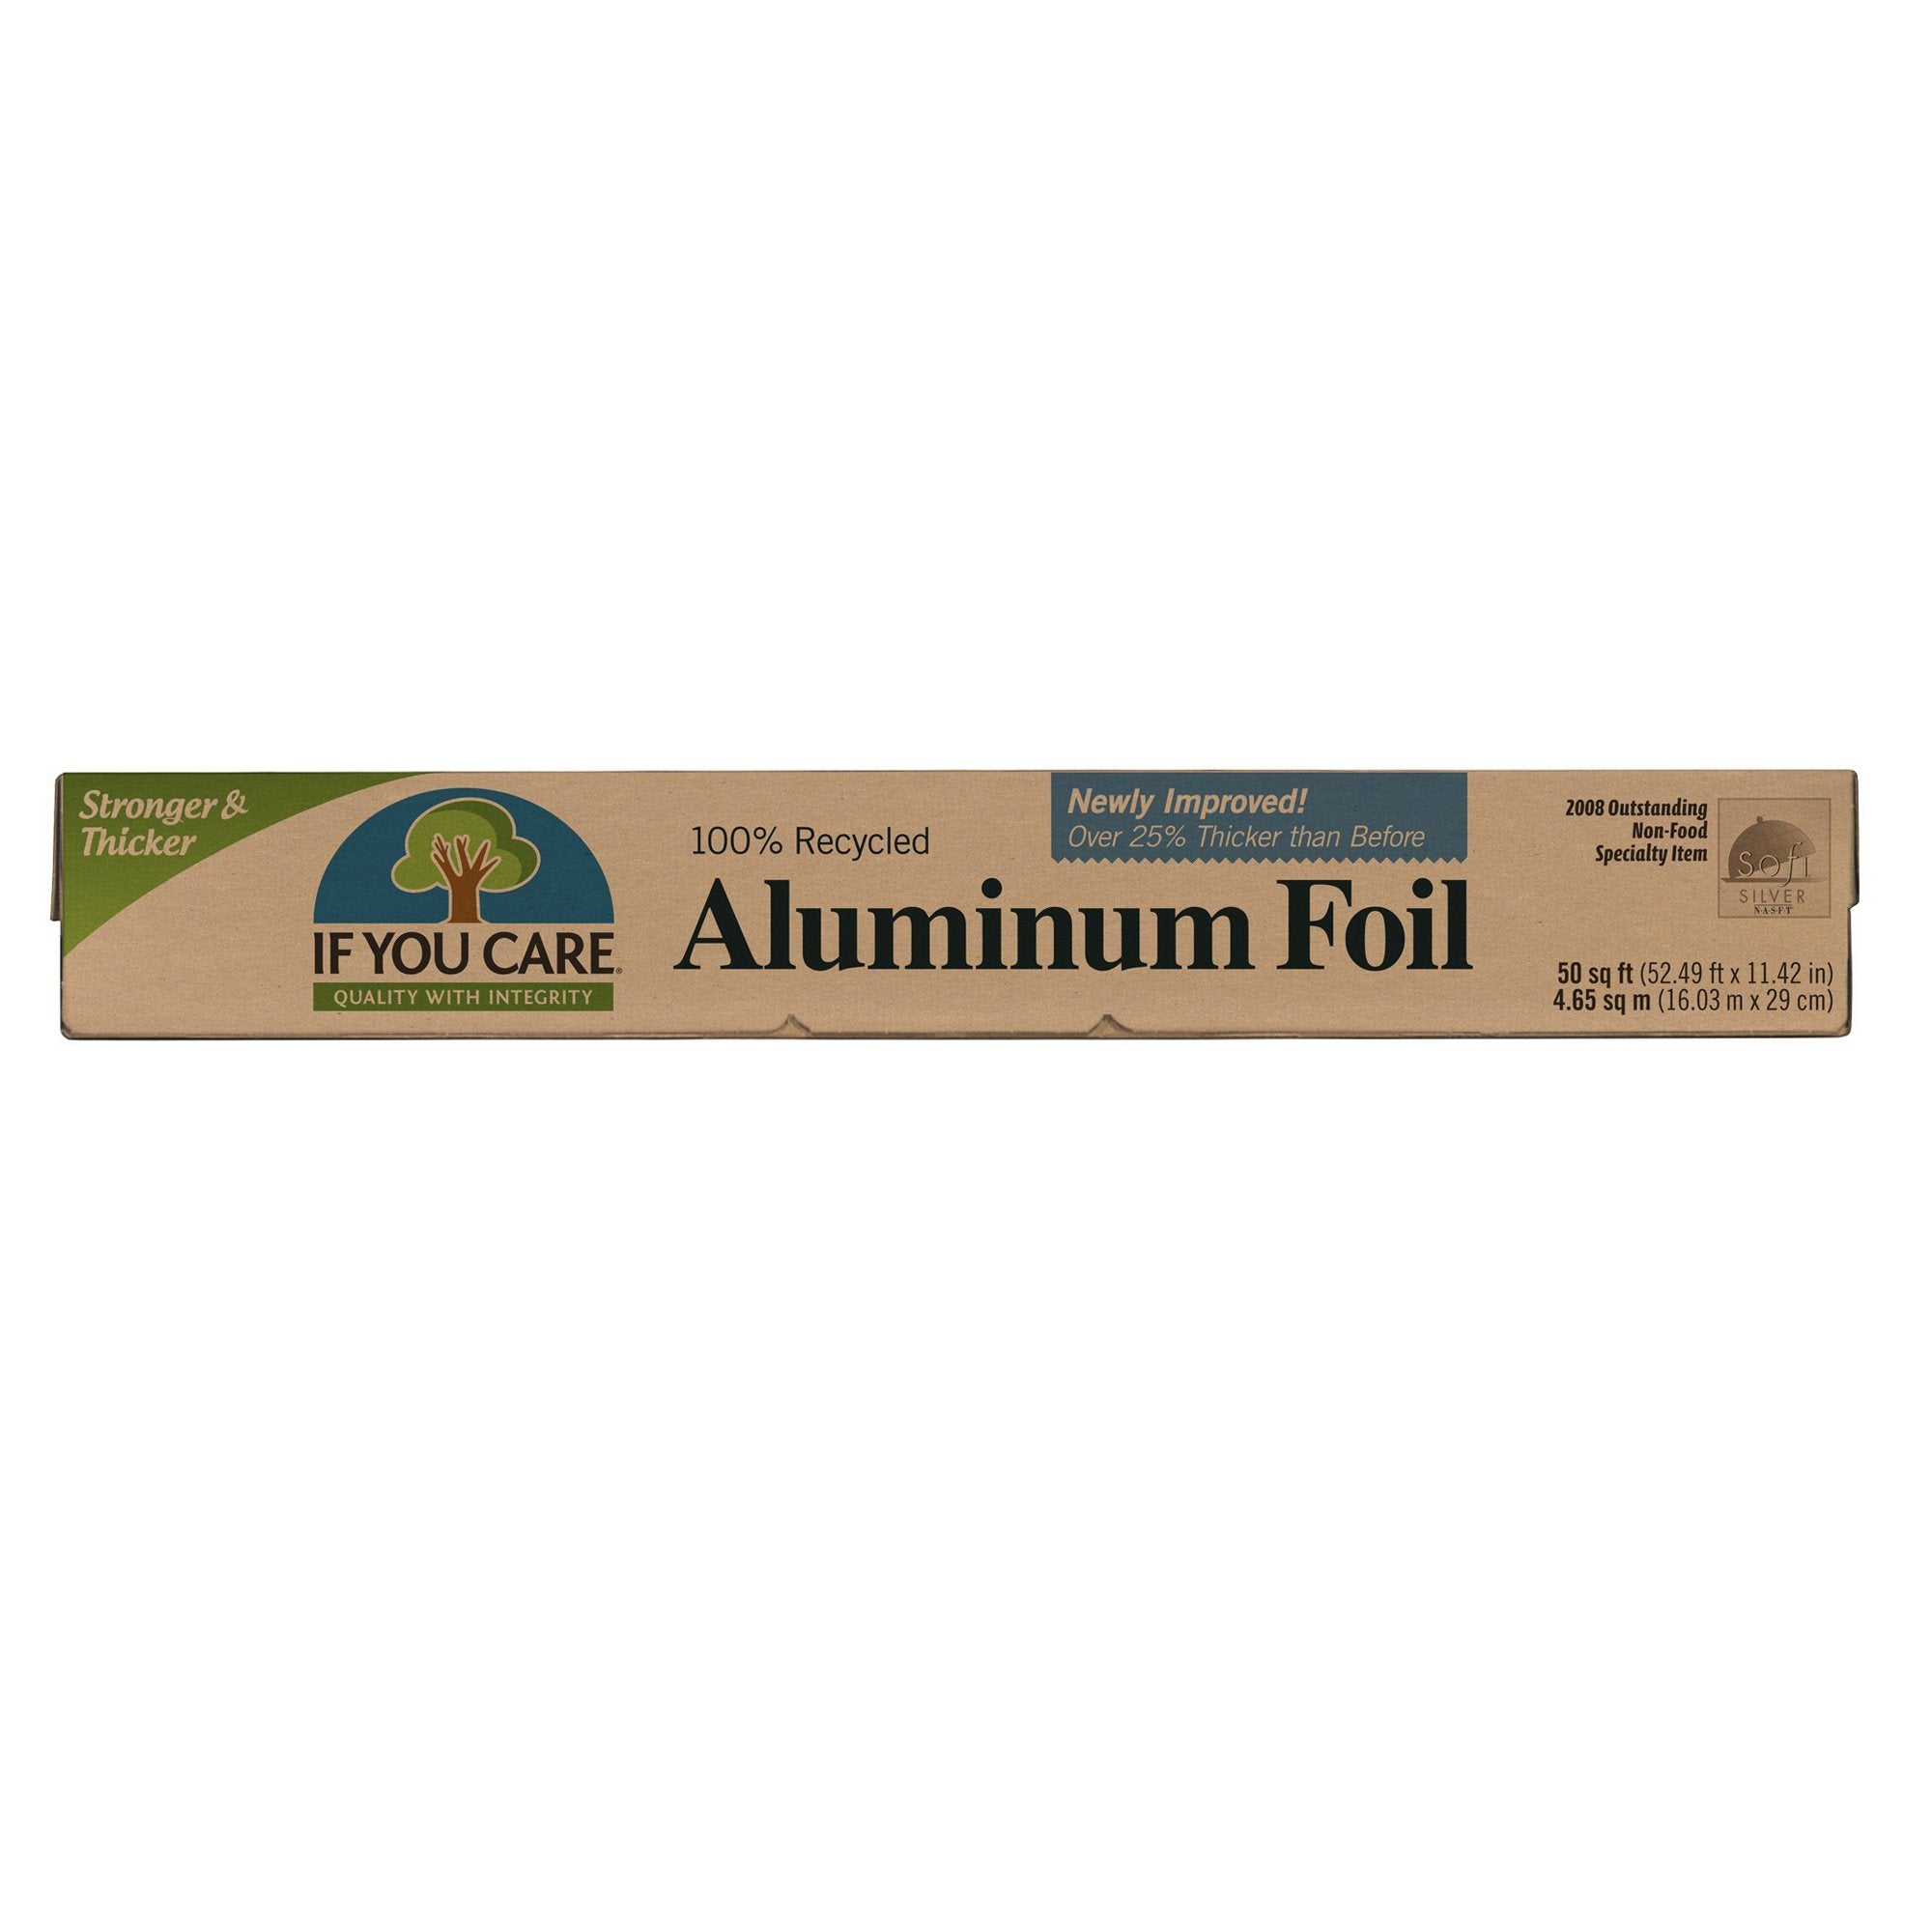 10 Ways You Can Reuse Aluminium Foil